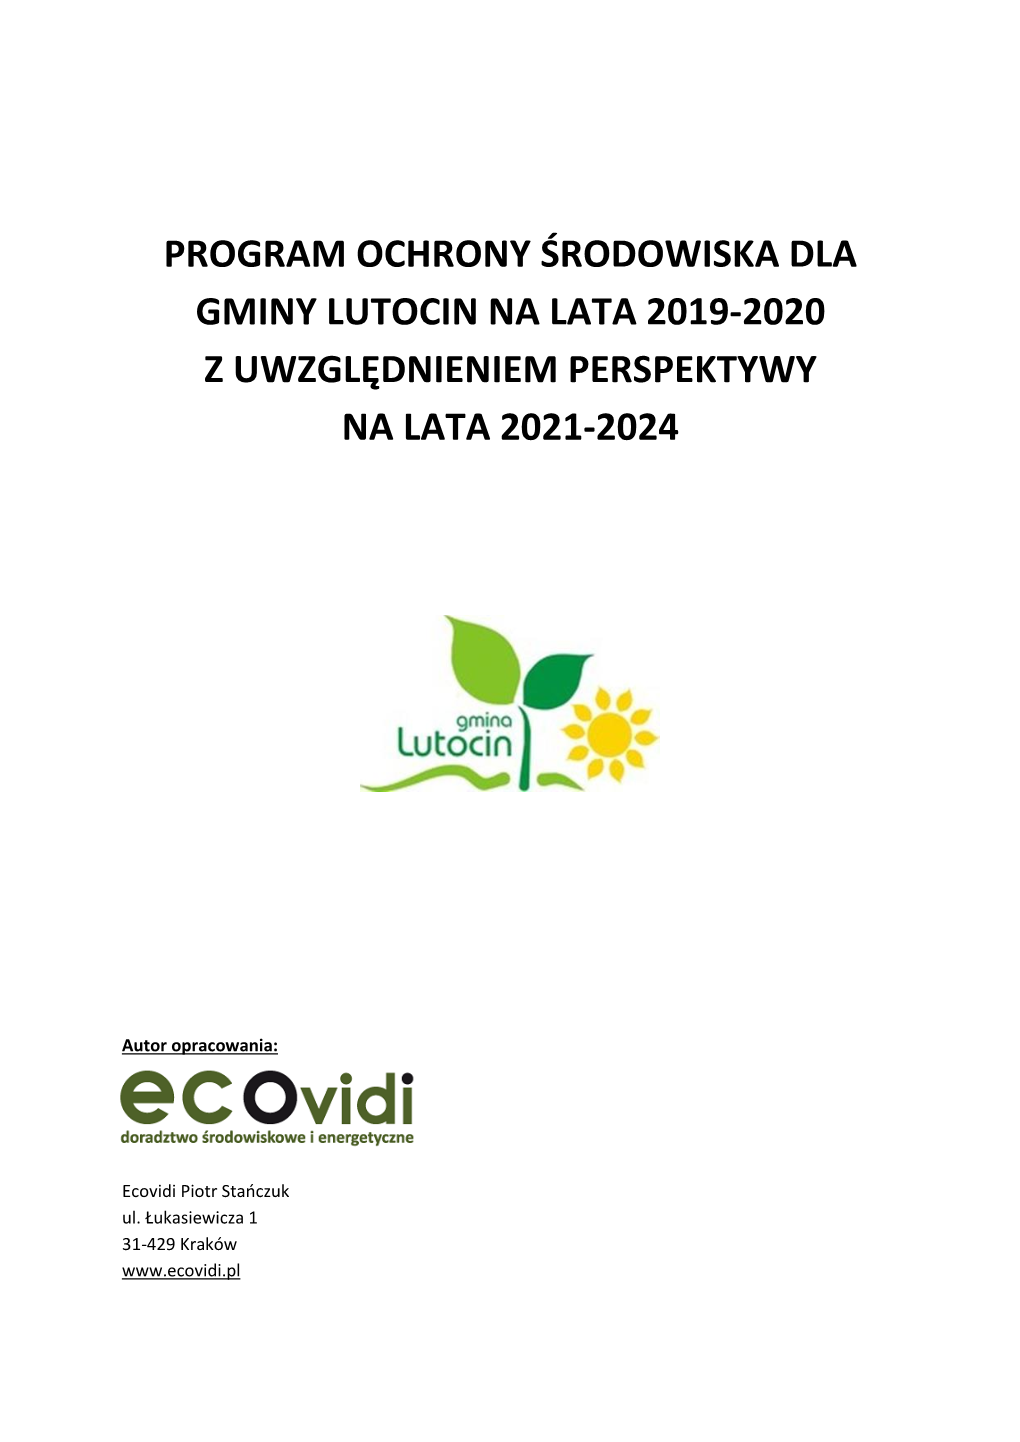 Program Ochrony Środowiska Dla Gminy Lutocin Na Lata 2019-2020 Z Uwzględnieniem Perspektywy Na Lata 2021-2024